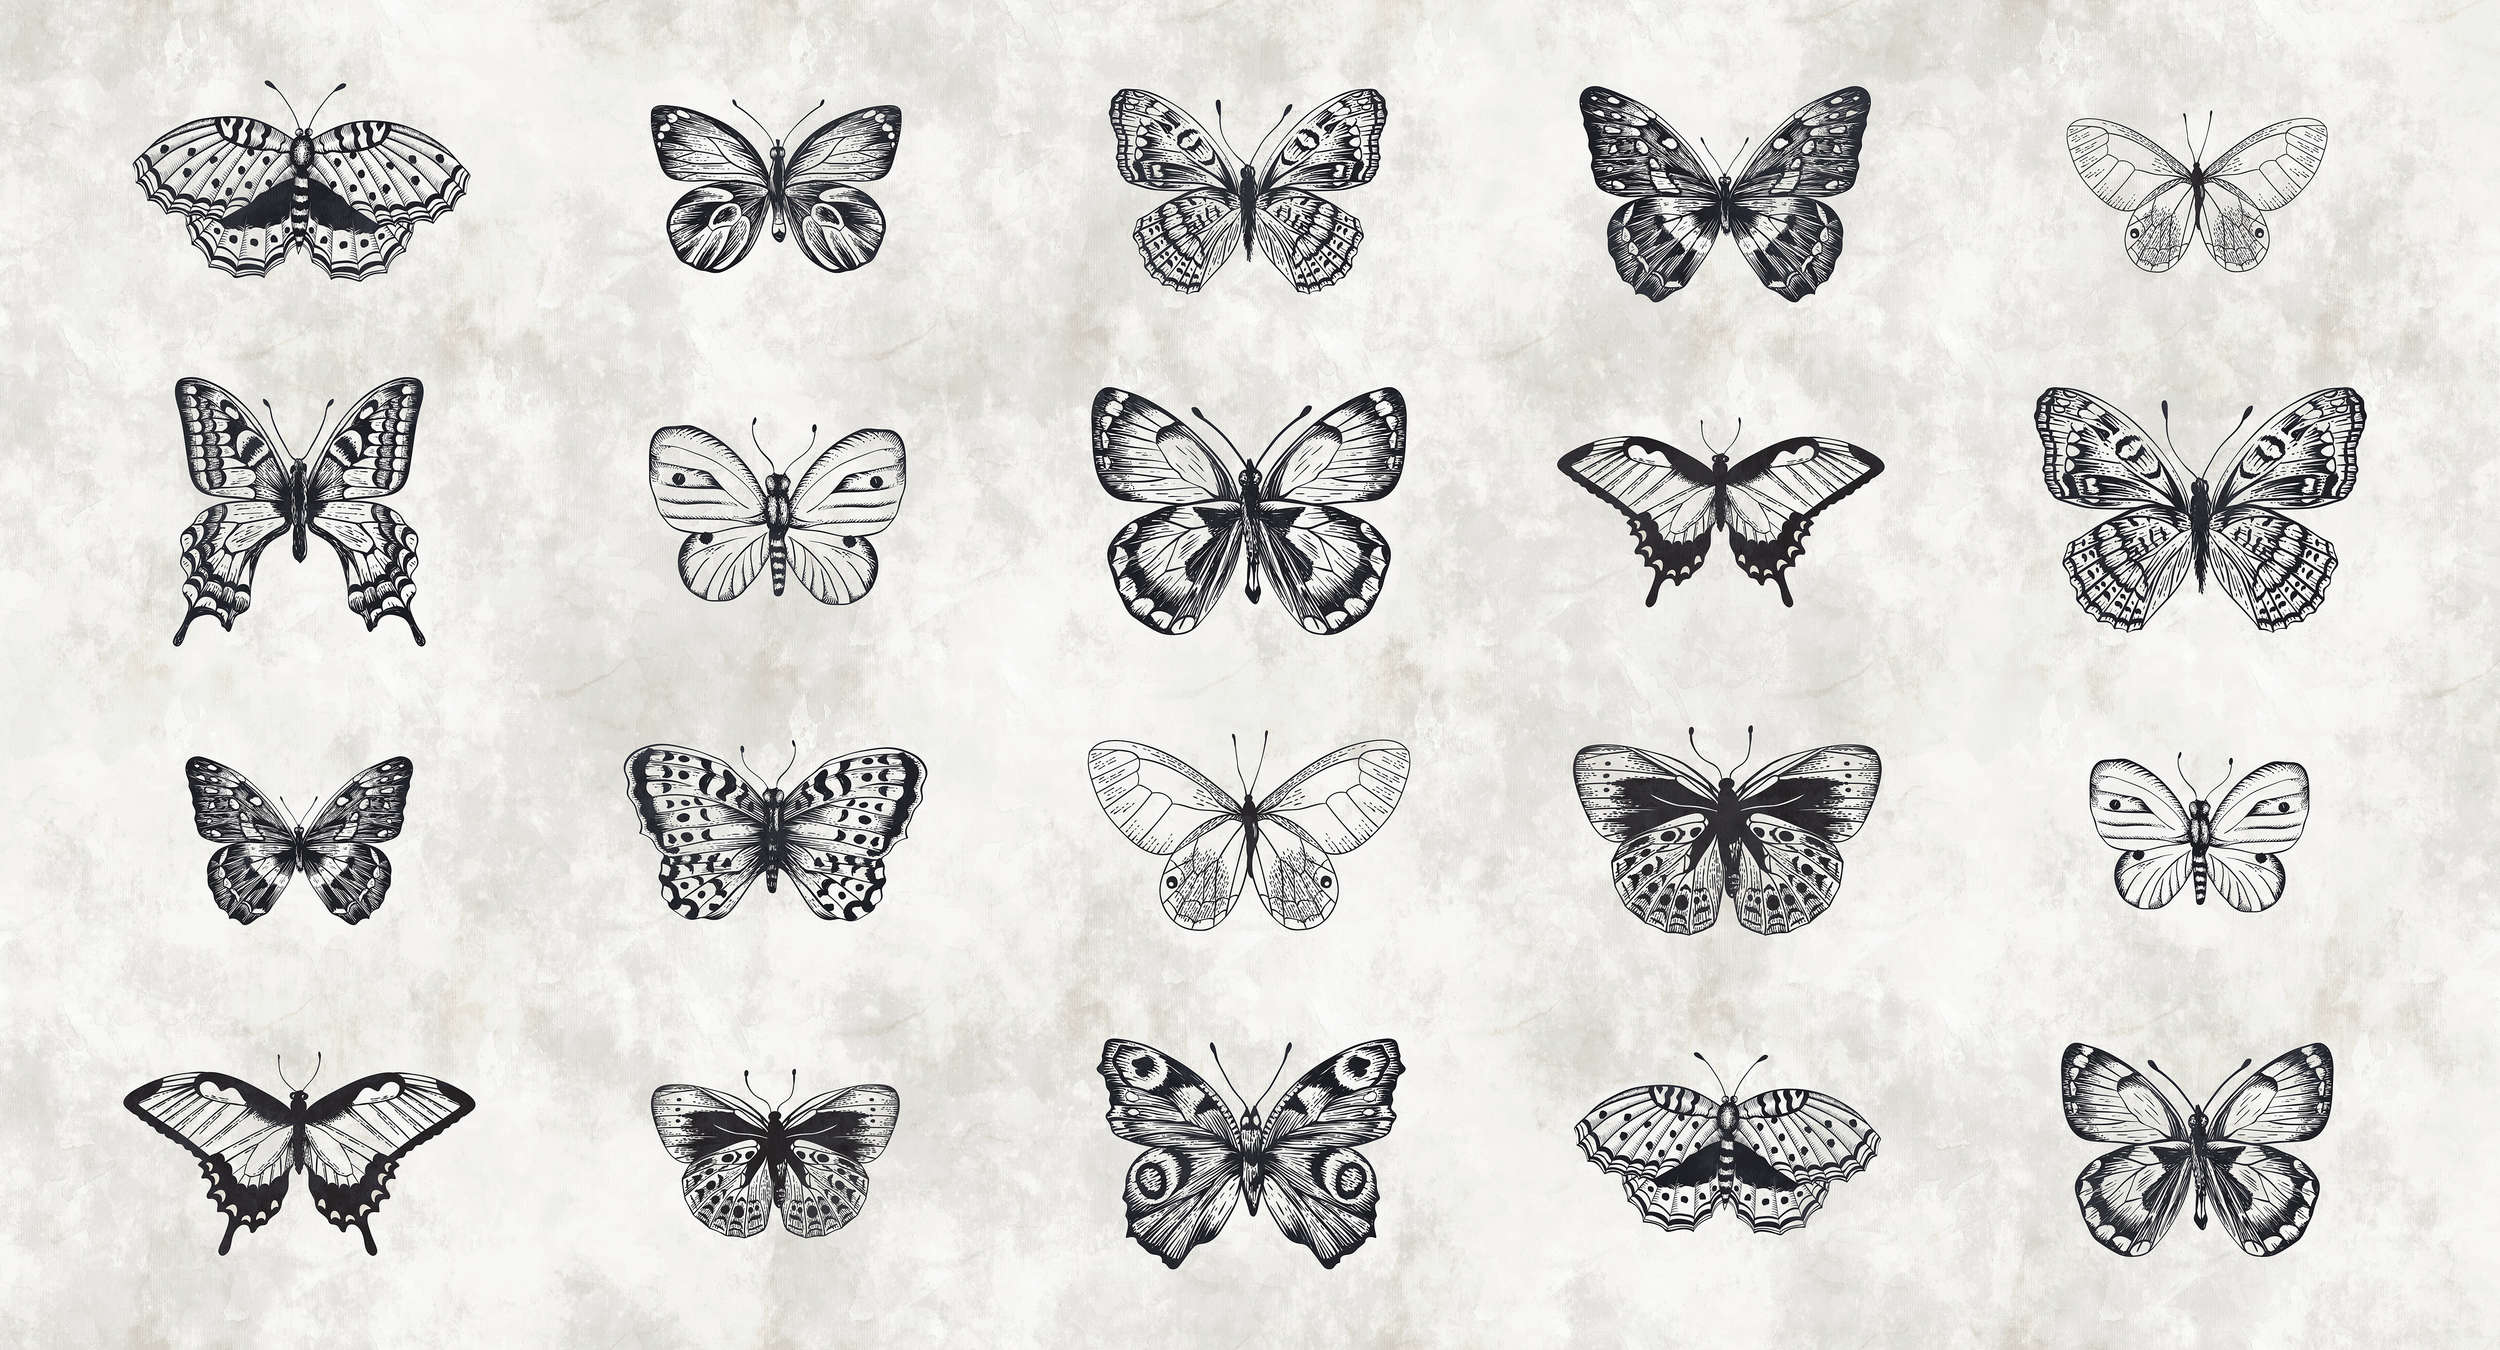             Papel pintado de mariposas Dibujos en blanco y negro
        